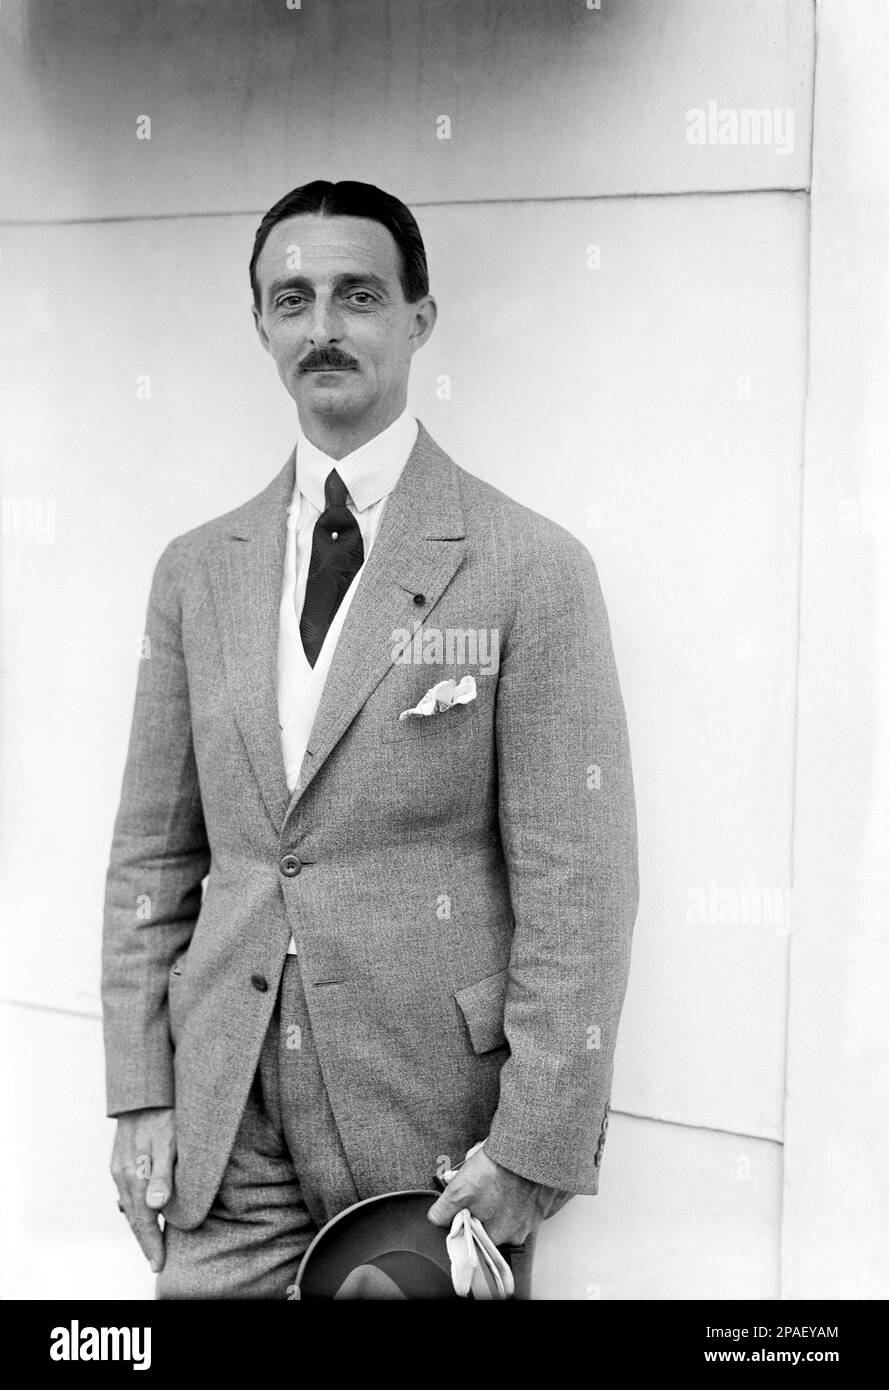 1925 , 15 août , New York , Etats-Unis : l'ambassadeur portugais aux Etats-Unis JOAS A. DE BIANCHI sur un Ocean Liner Cruiser Navy . Photo de bain , New York - POLITICO - POLITICA - POLITIC - STATISTA - AMBASCIATORE - PORTOGALLO - foto storiche - fstorica - portrait - ritratto - collier - colletto - moustache - DIPLOMATICO - DIPROMAZIA - DIPLOMATIQUE - chapeau - cappello - cravatta - collier - collier - collier - collier - collier - chiplâne - collier - collier - - Fazzoletto nel taschino - pochette - Transatlantico - nef - fermacravatta - FOTO STORICHE - HISTOIRE ---- ARCHIVIO GBB Banque D'Images